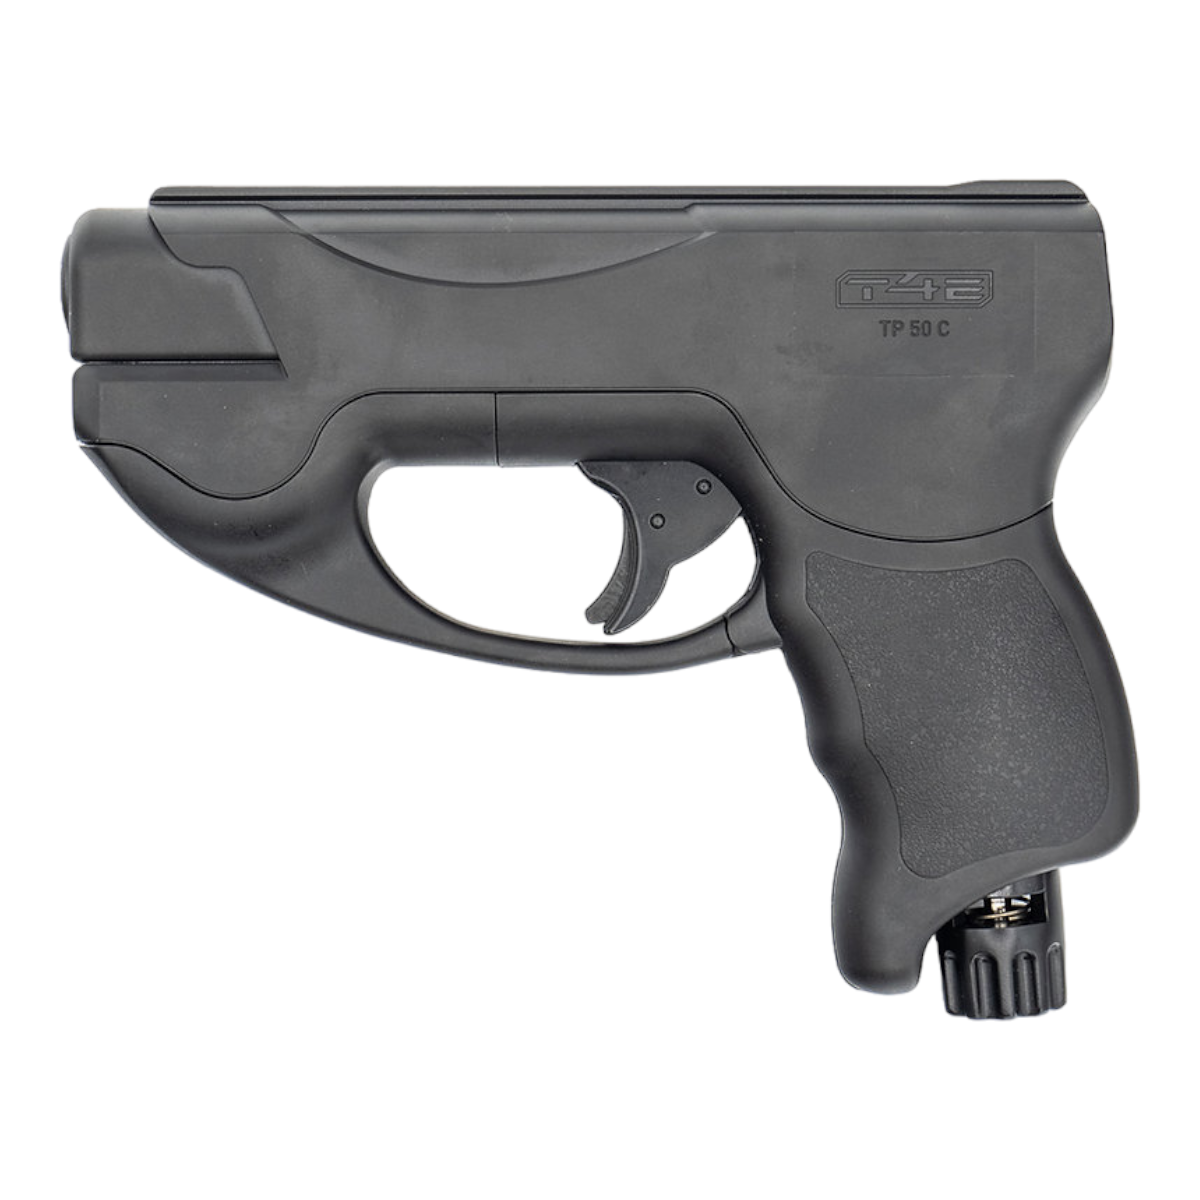 Pistola traumatica Umarex TP50 Compact calibre 50 PTC1